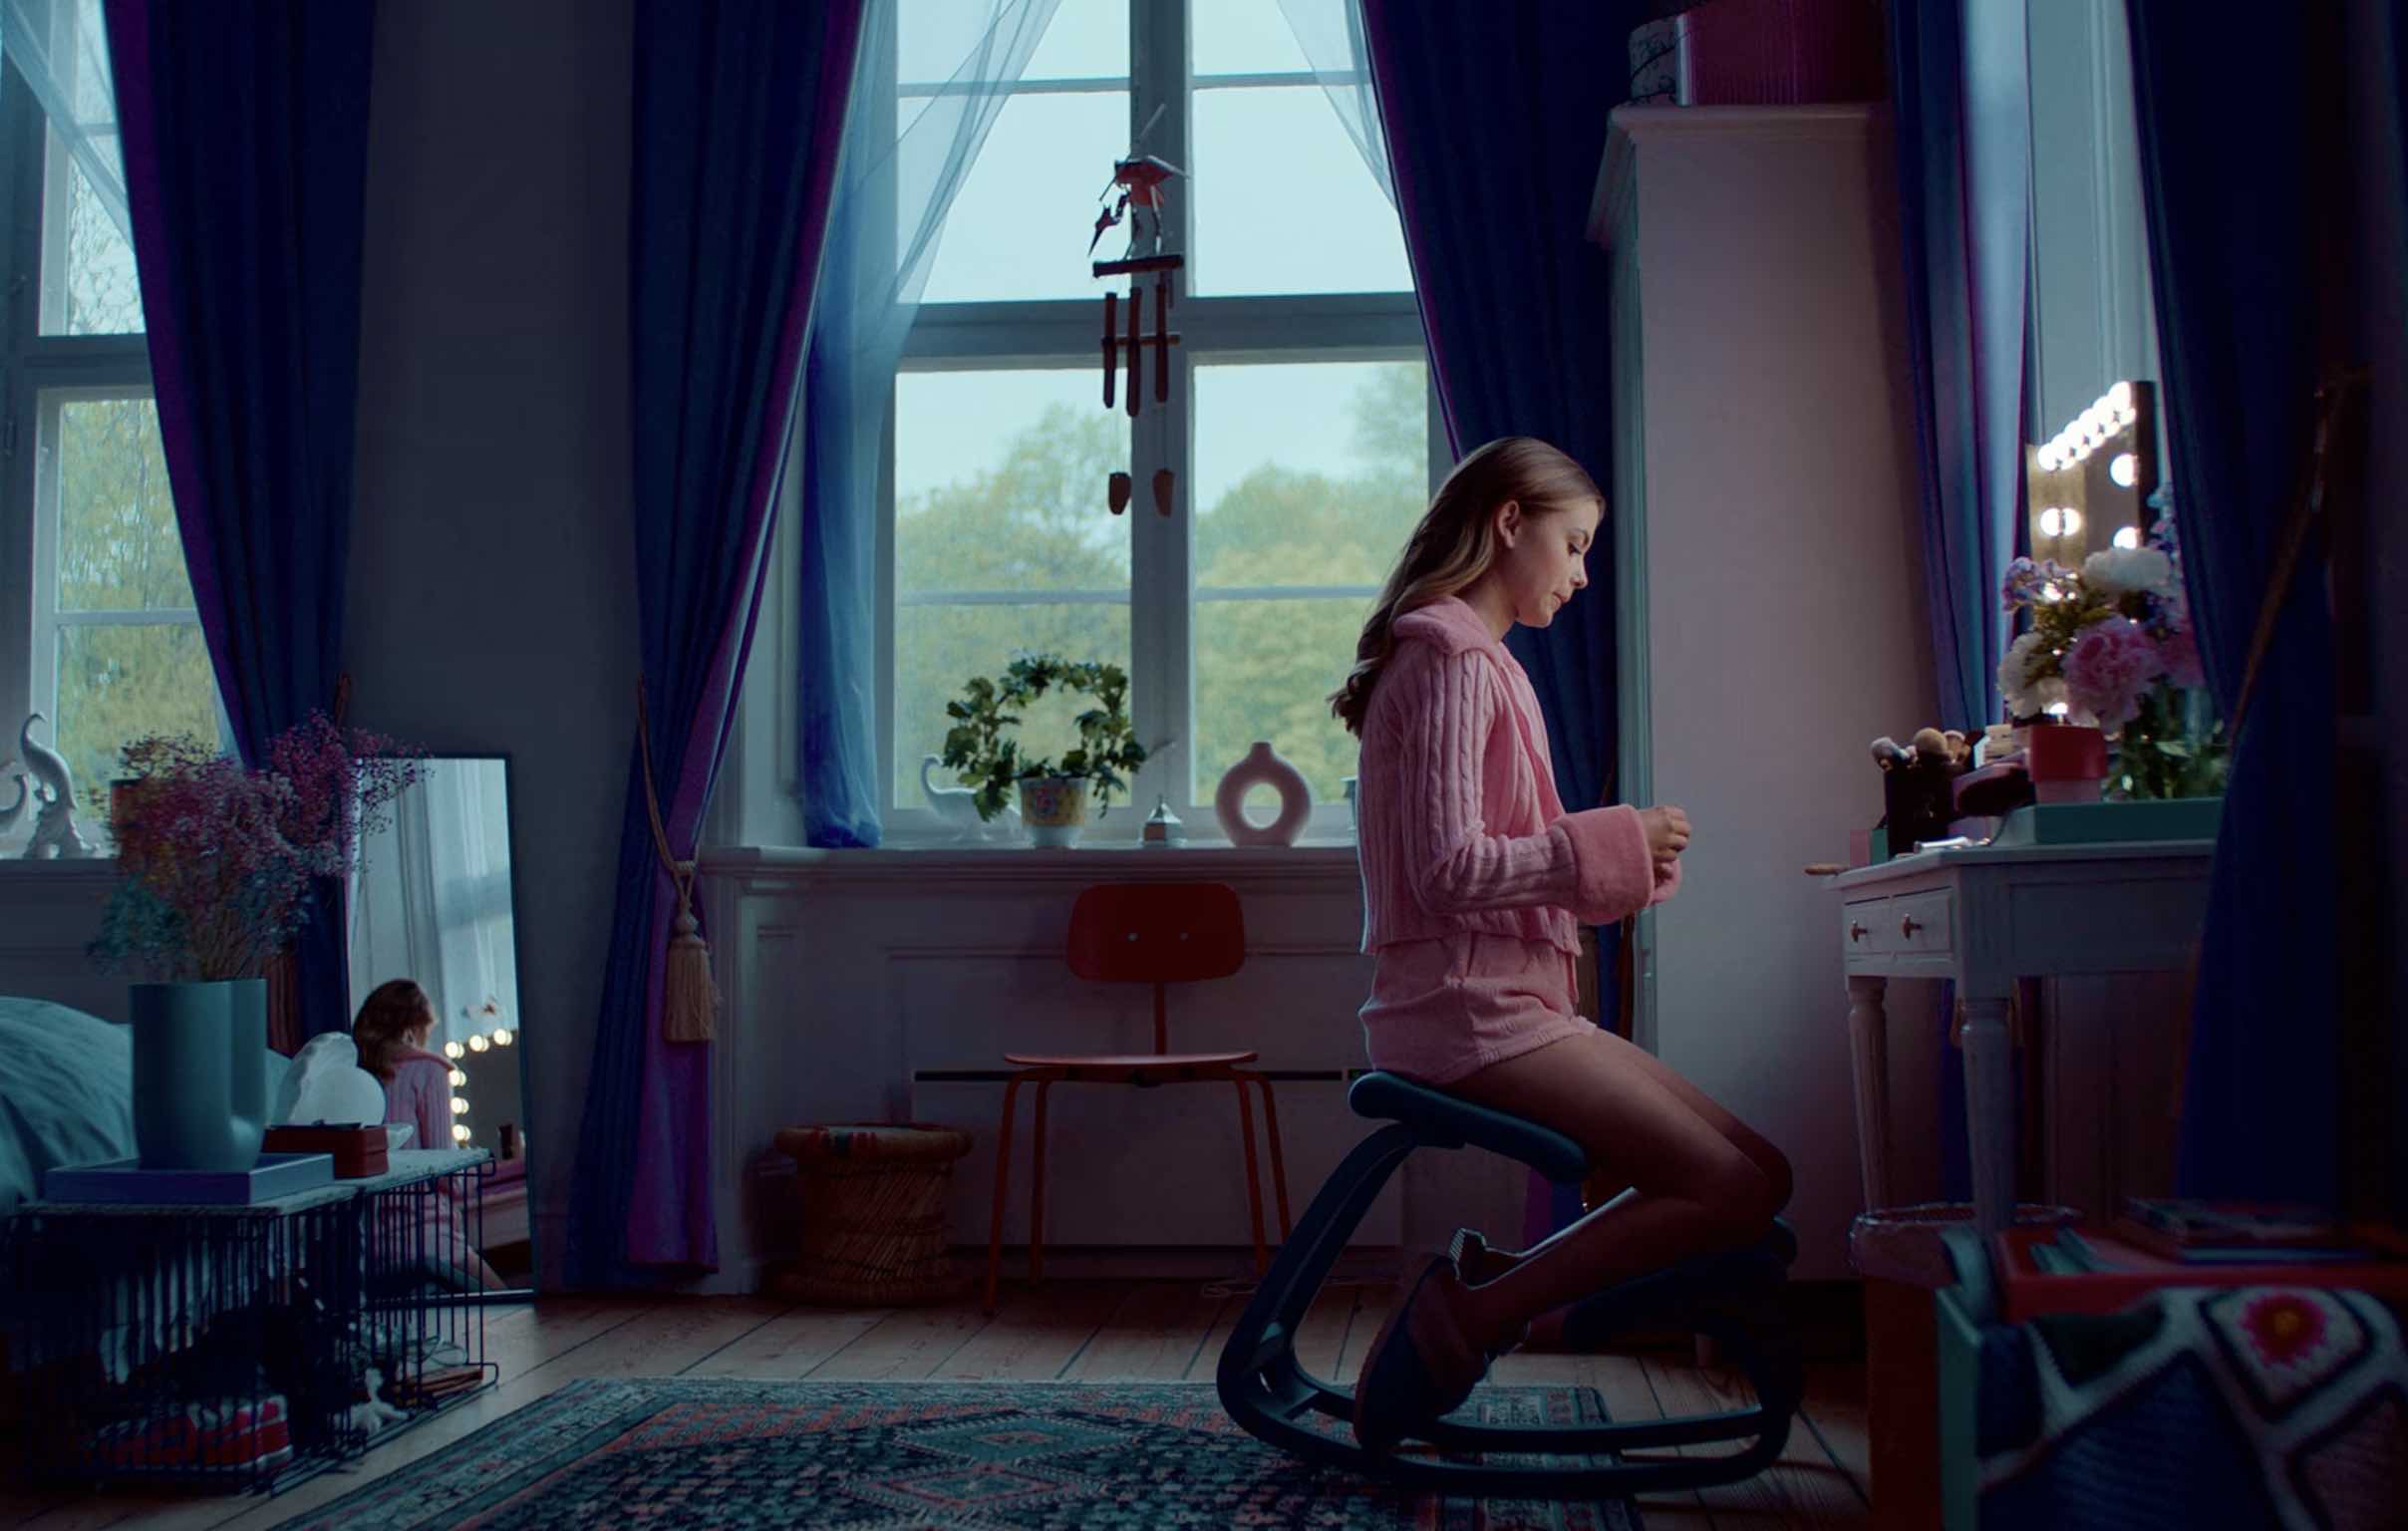 ROYALTEEN PRINCESSE MARGRETHE netflix - Royalteen : Princess Margrethe, une suite pour le teen movie danois en mai sur Netflix (Nouveautés film)